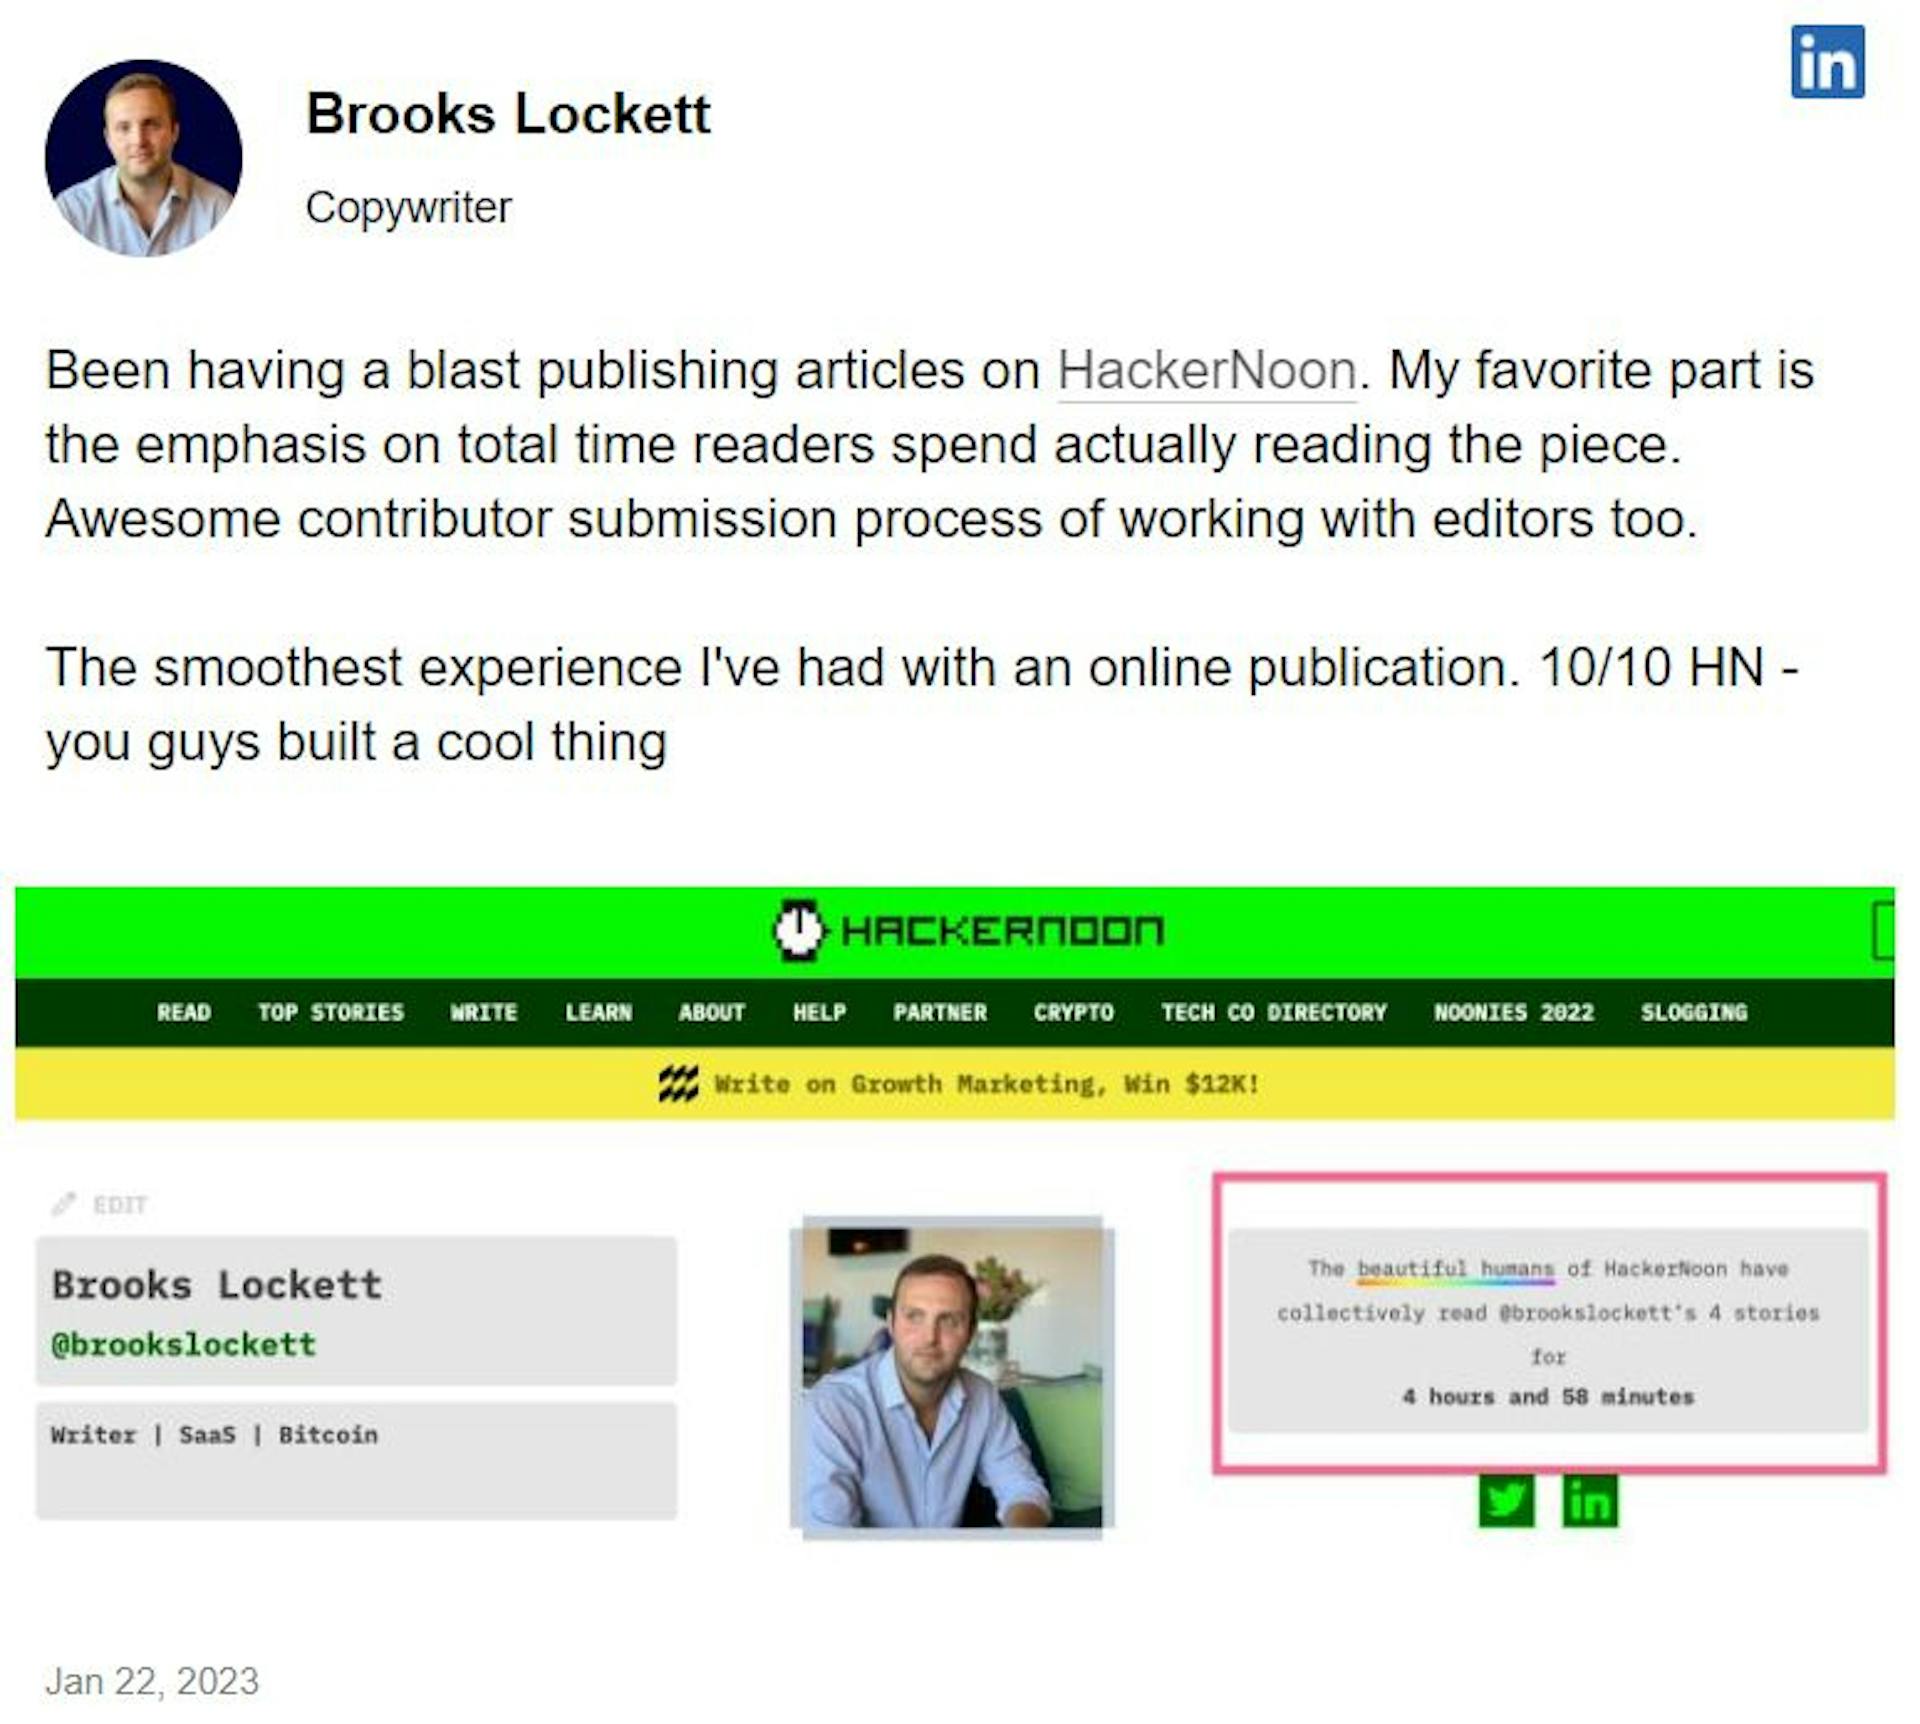 Brooks Lockett's testimony on HackerNoon, January 2023.